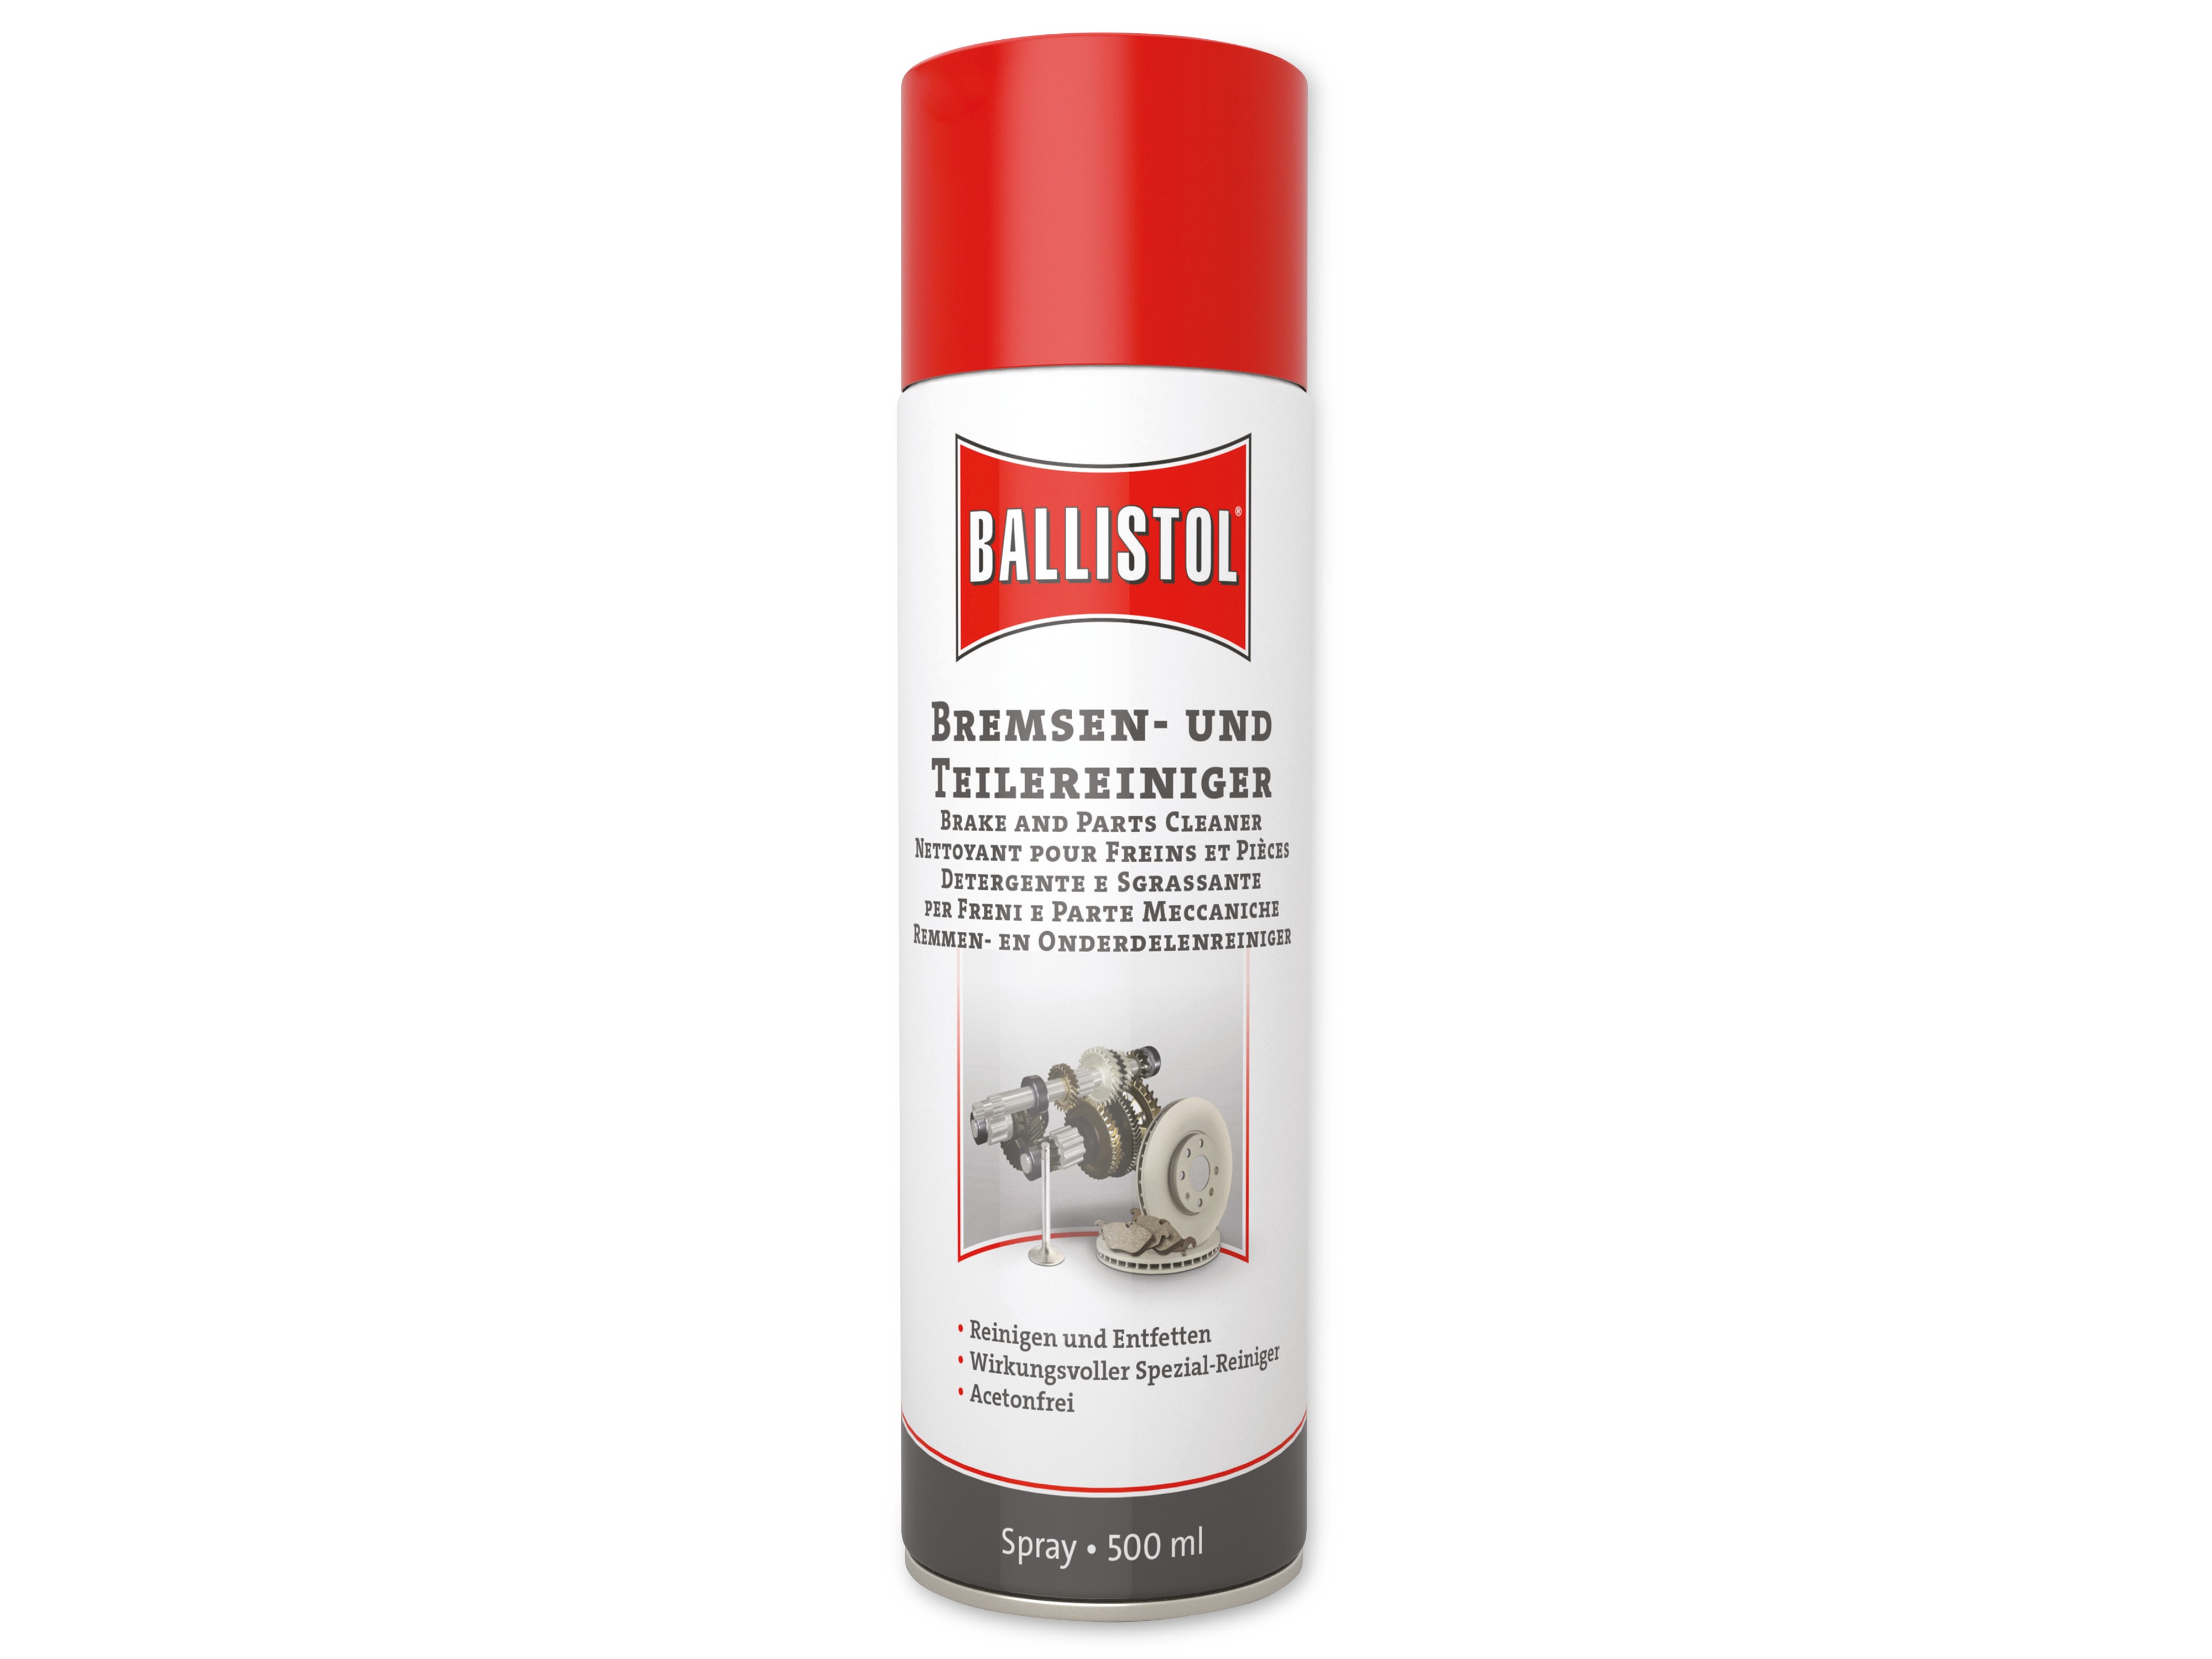 BALLISTOL Bremsen- und Teilereiniger Spray, 500 ml